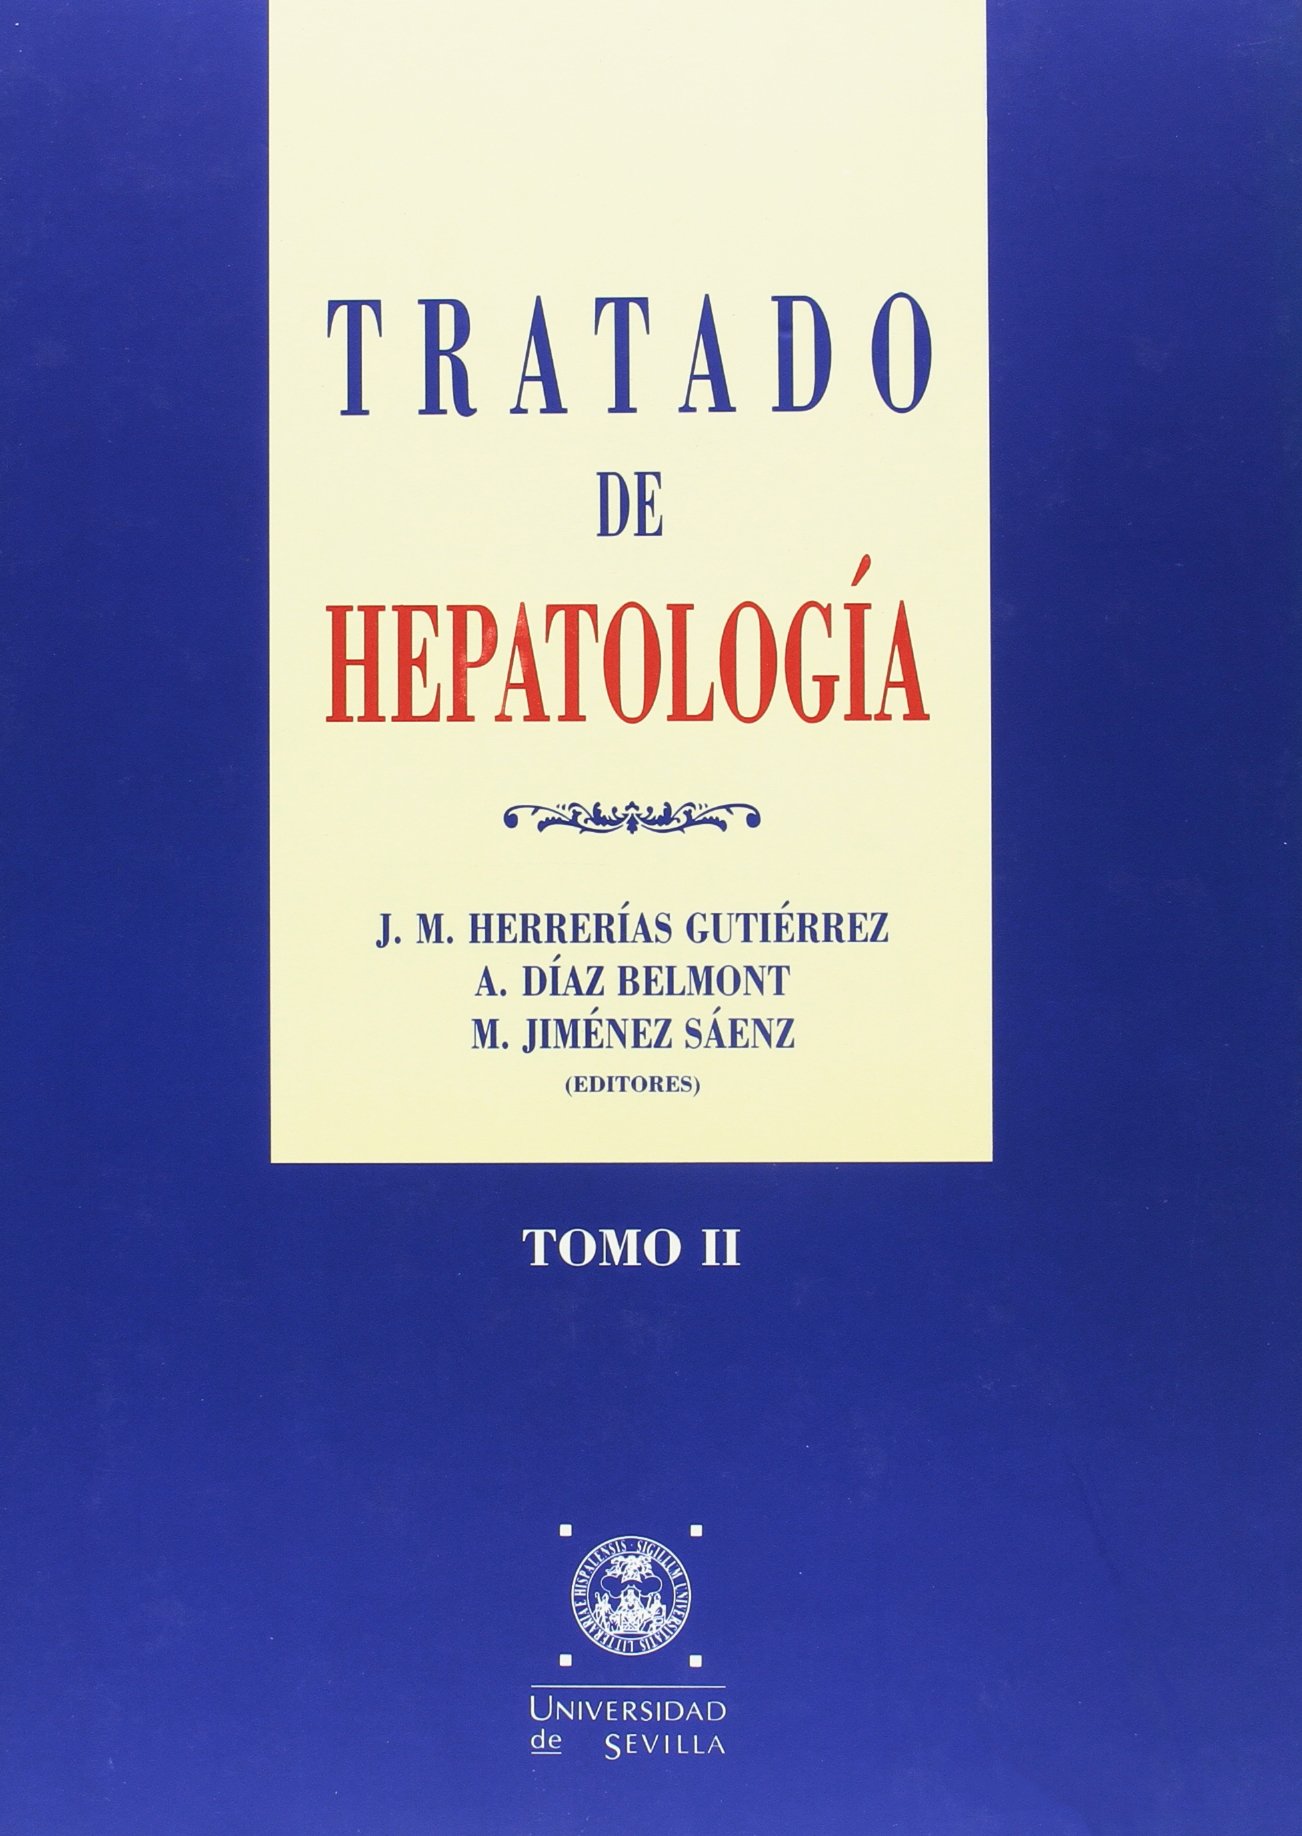 Imagen de portada del libro Tratado de hepatología